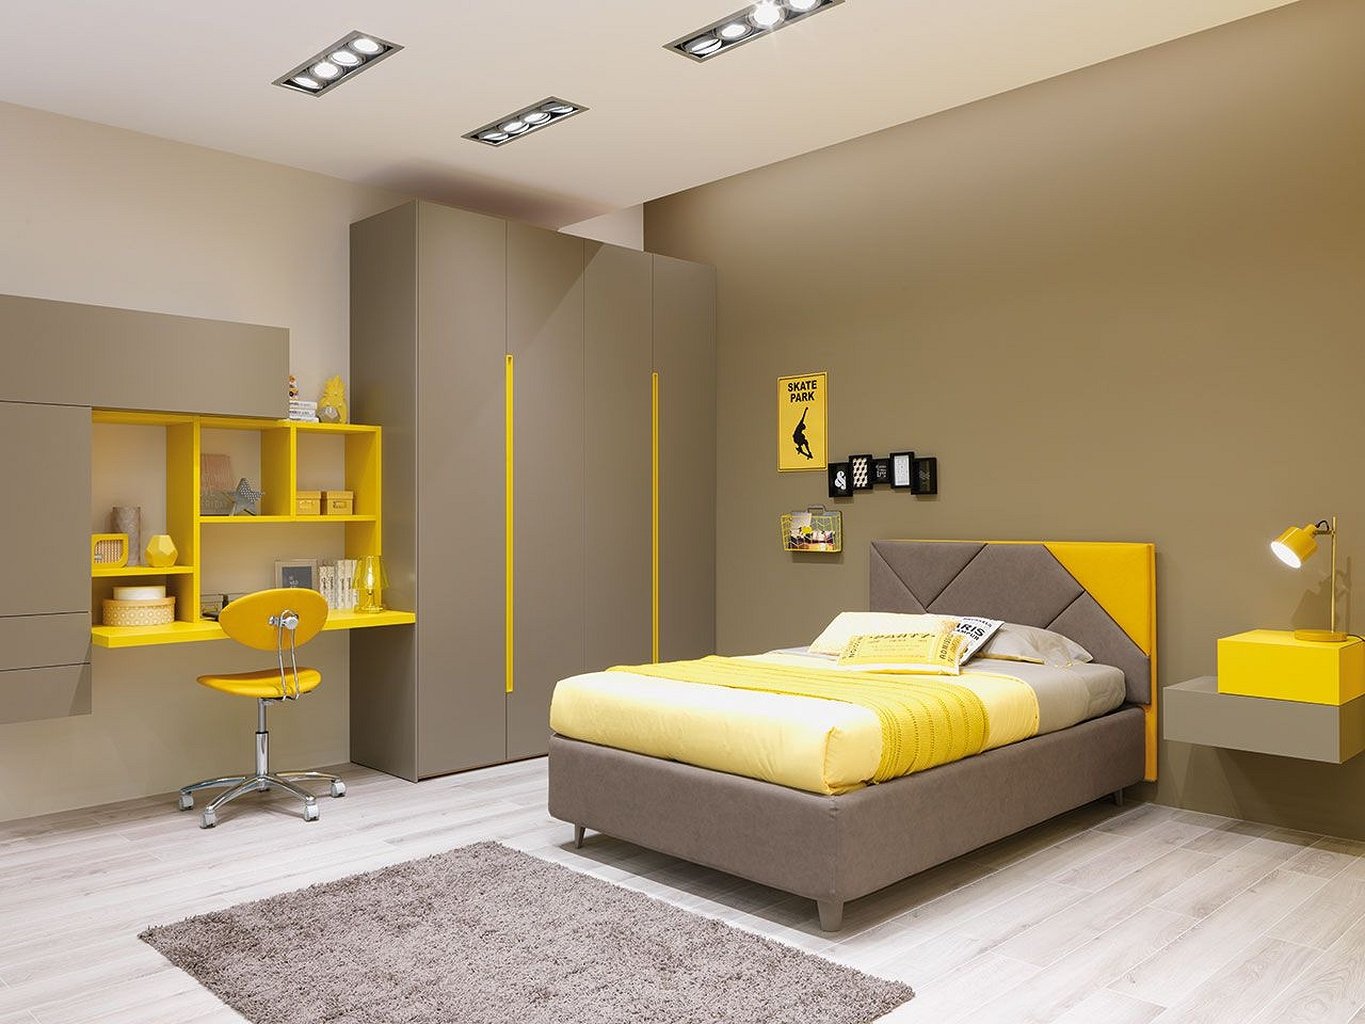 غرفة نوم شباب باللونين الرمادي والاصفر